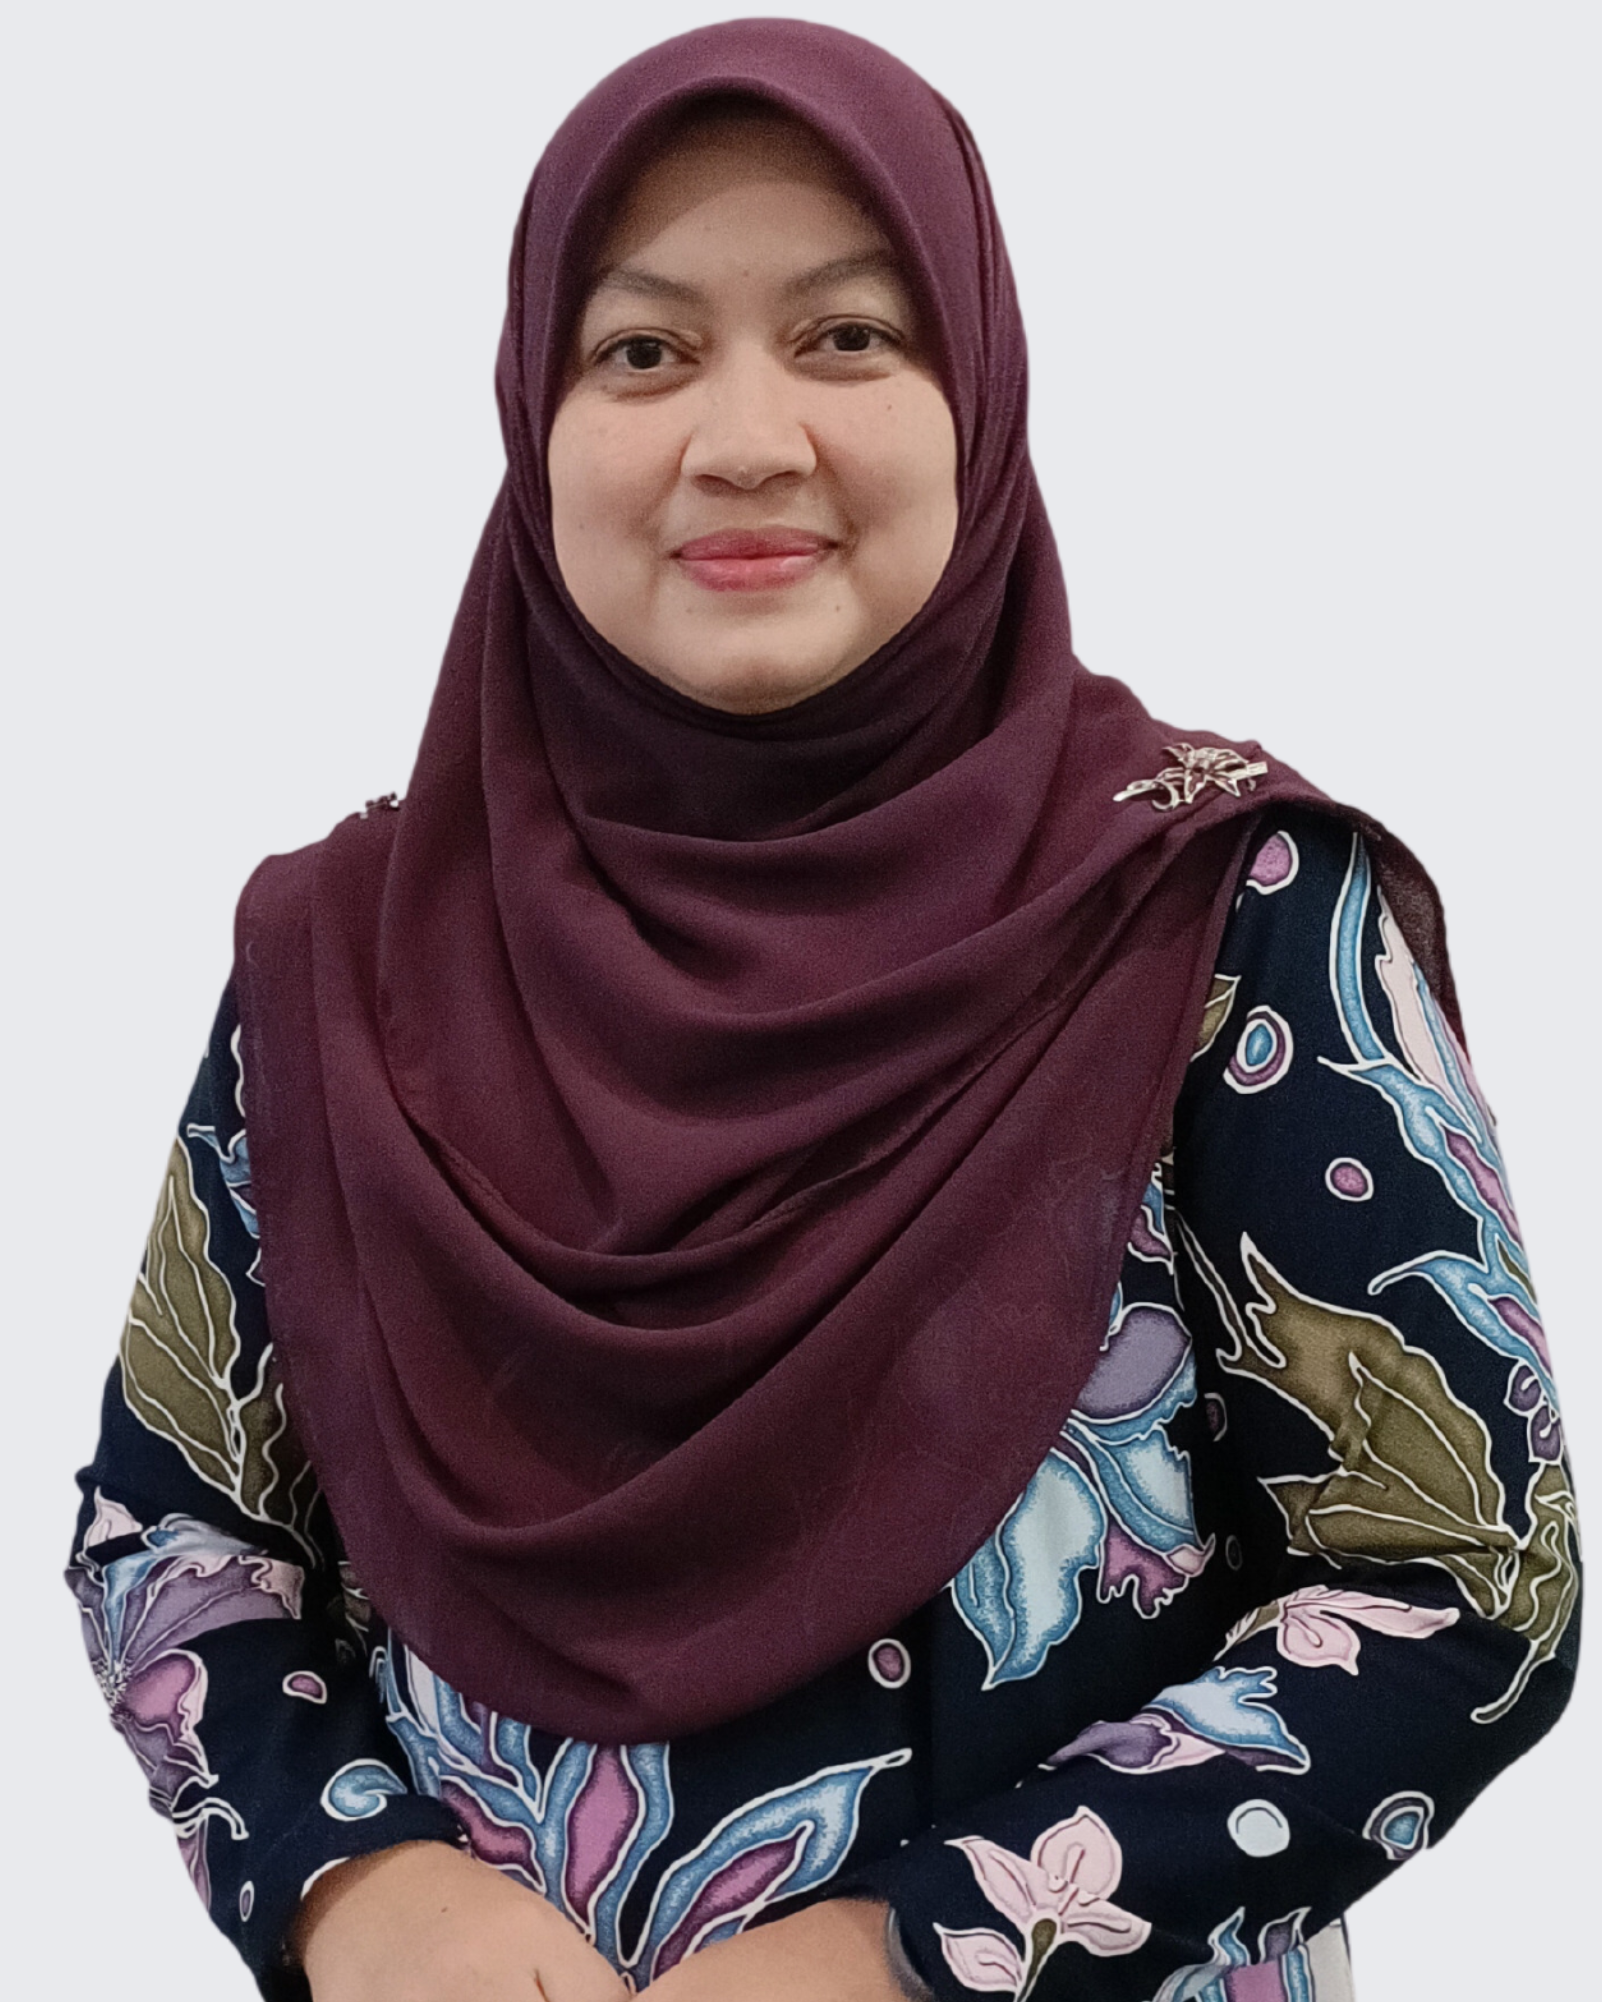 Dr. Wan Nurisma Ayu Wan Ismail